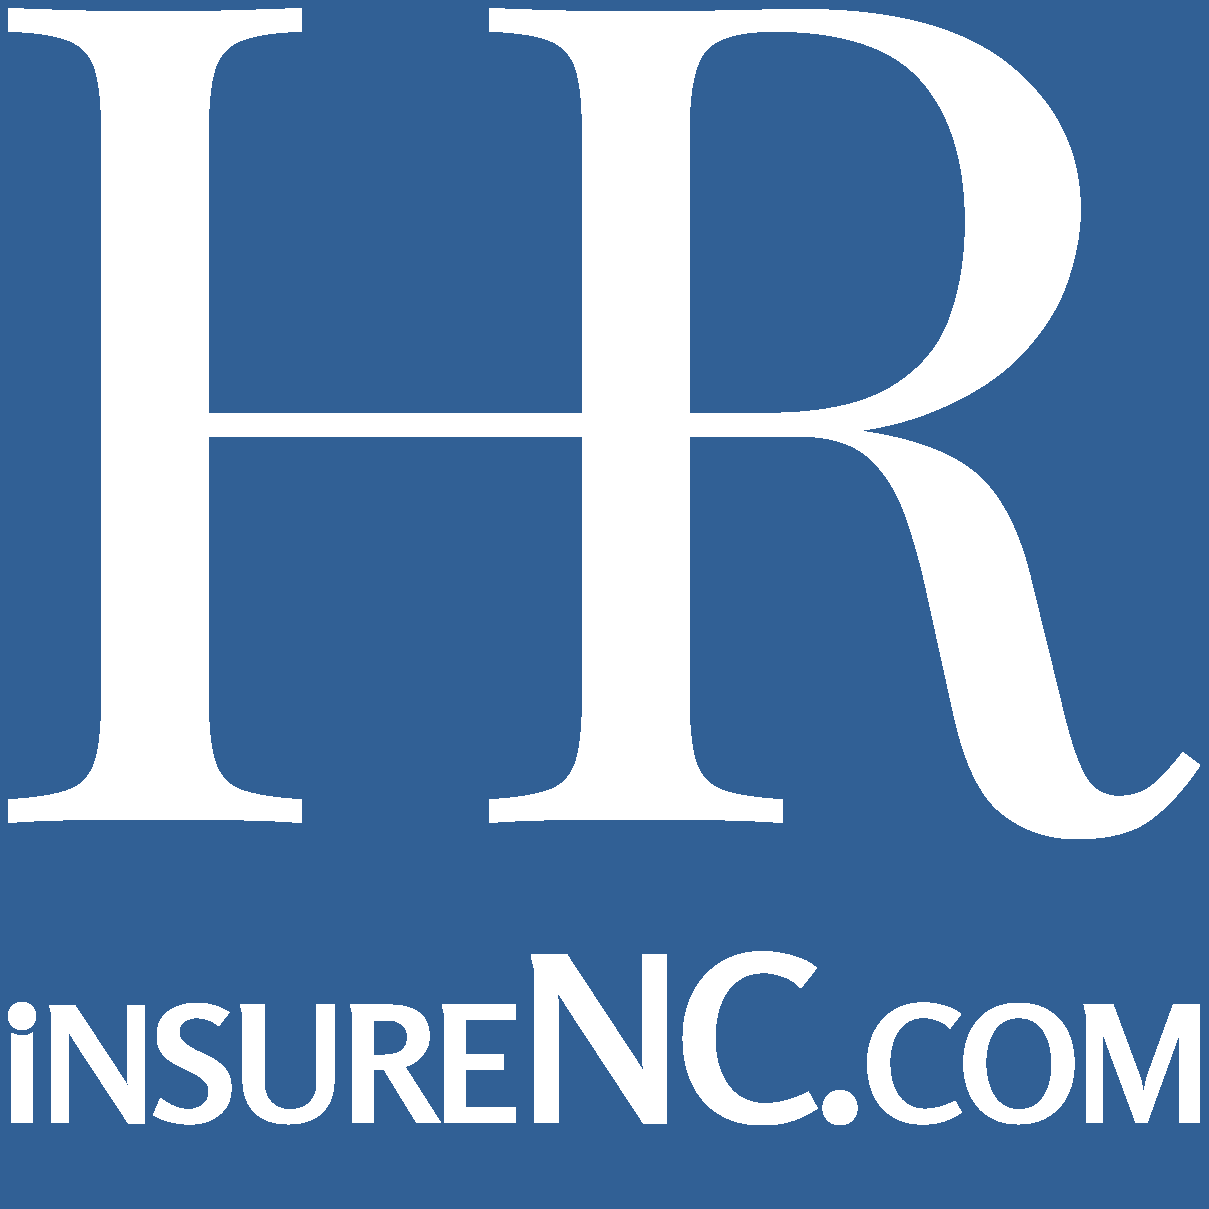 insureNC.com
Hiller Ringeman Insurance Agency, Inc.
https://www.insureNC.com